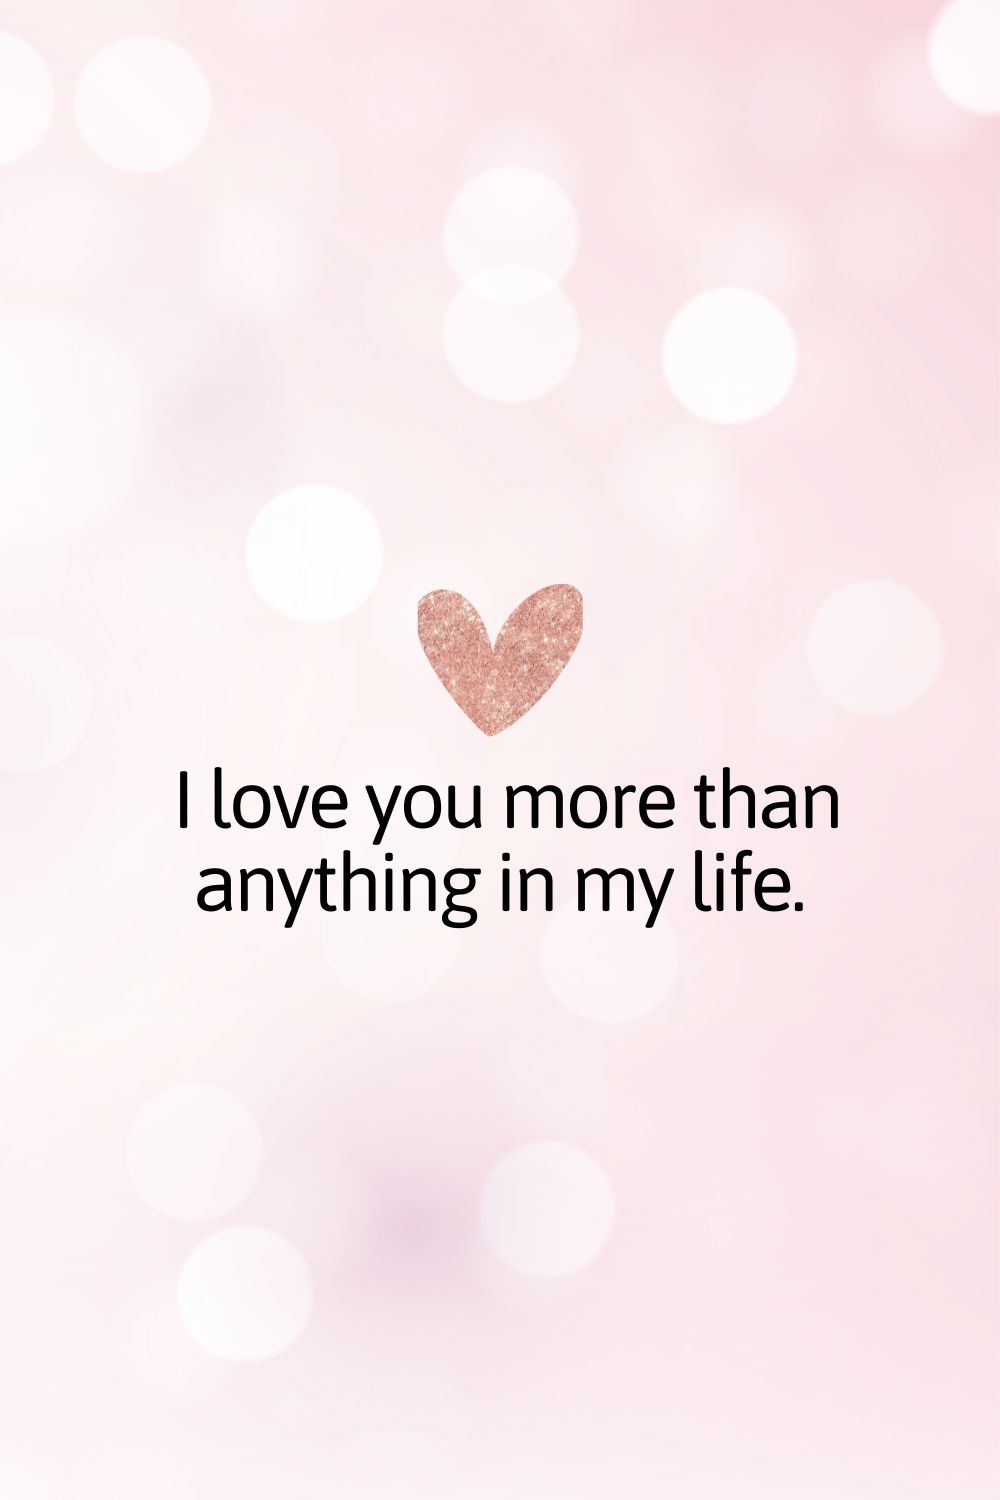 Te quiero más que a nada en mi vida